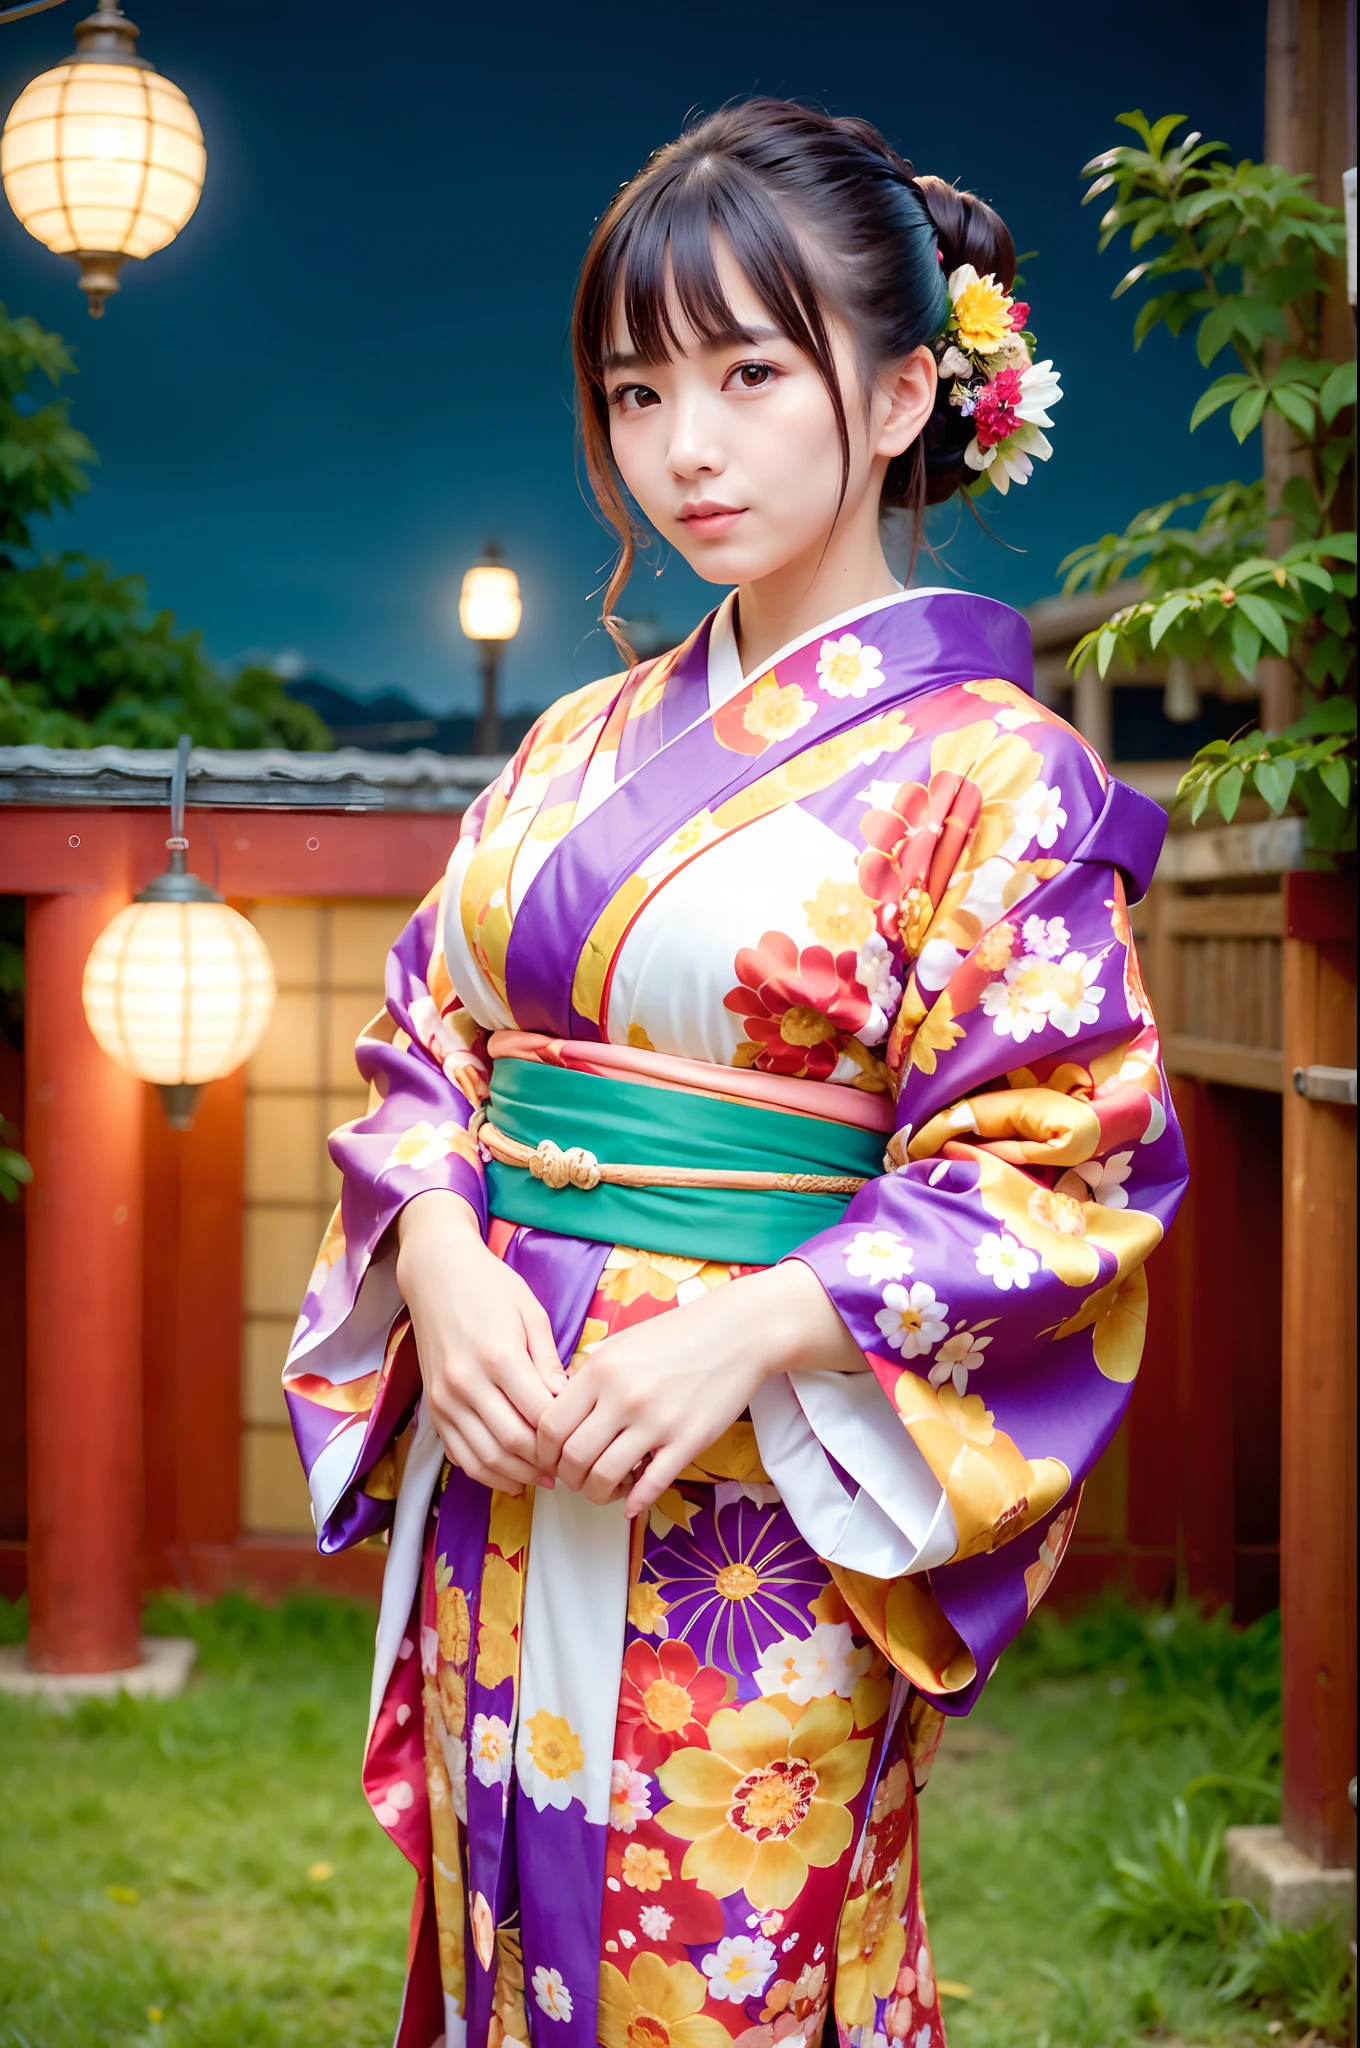 Frau, (trägt einen bunten Kimono_Kleidung:1.3), Urlaub,
gute Hand,4k, hochauflösend, Meisterwerk, beste Qualität, Kopf:1.3,((Hasselblad-Fotografie)), fein detaillierte Haut, scharfer Fokus, (Filmische Beleuchtung), Nacht, sanfte Beleuchtung, dynamischer Winkel, [:(detailliertes Gesicht:1.2):0.2], mittlere Brüste, draußen,